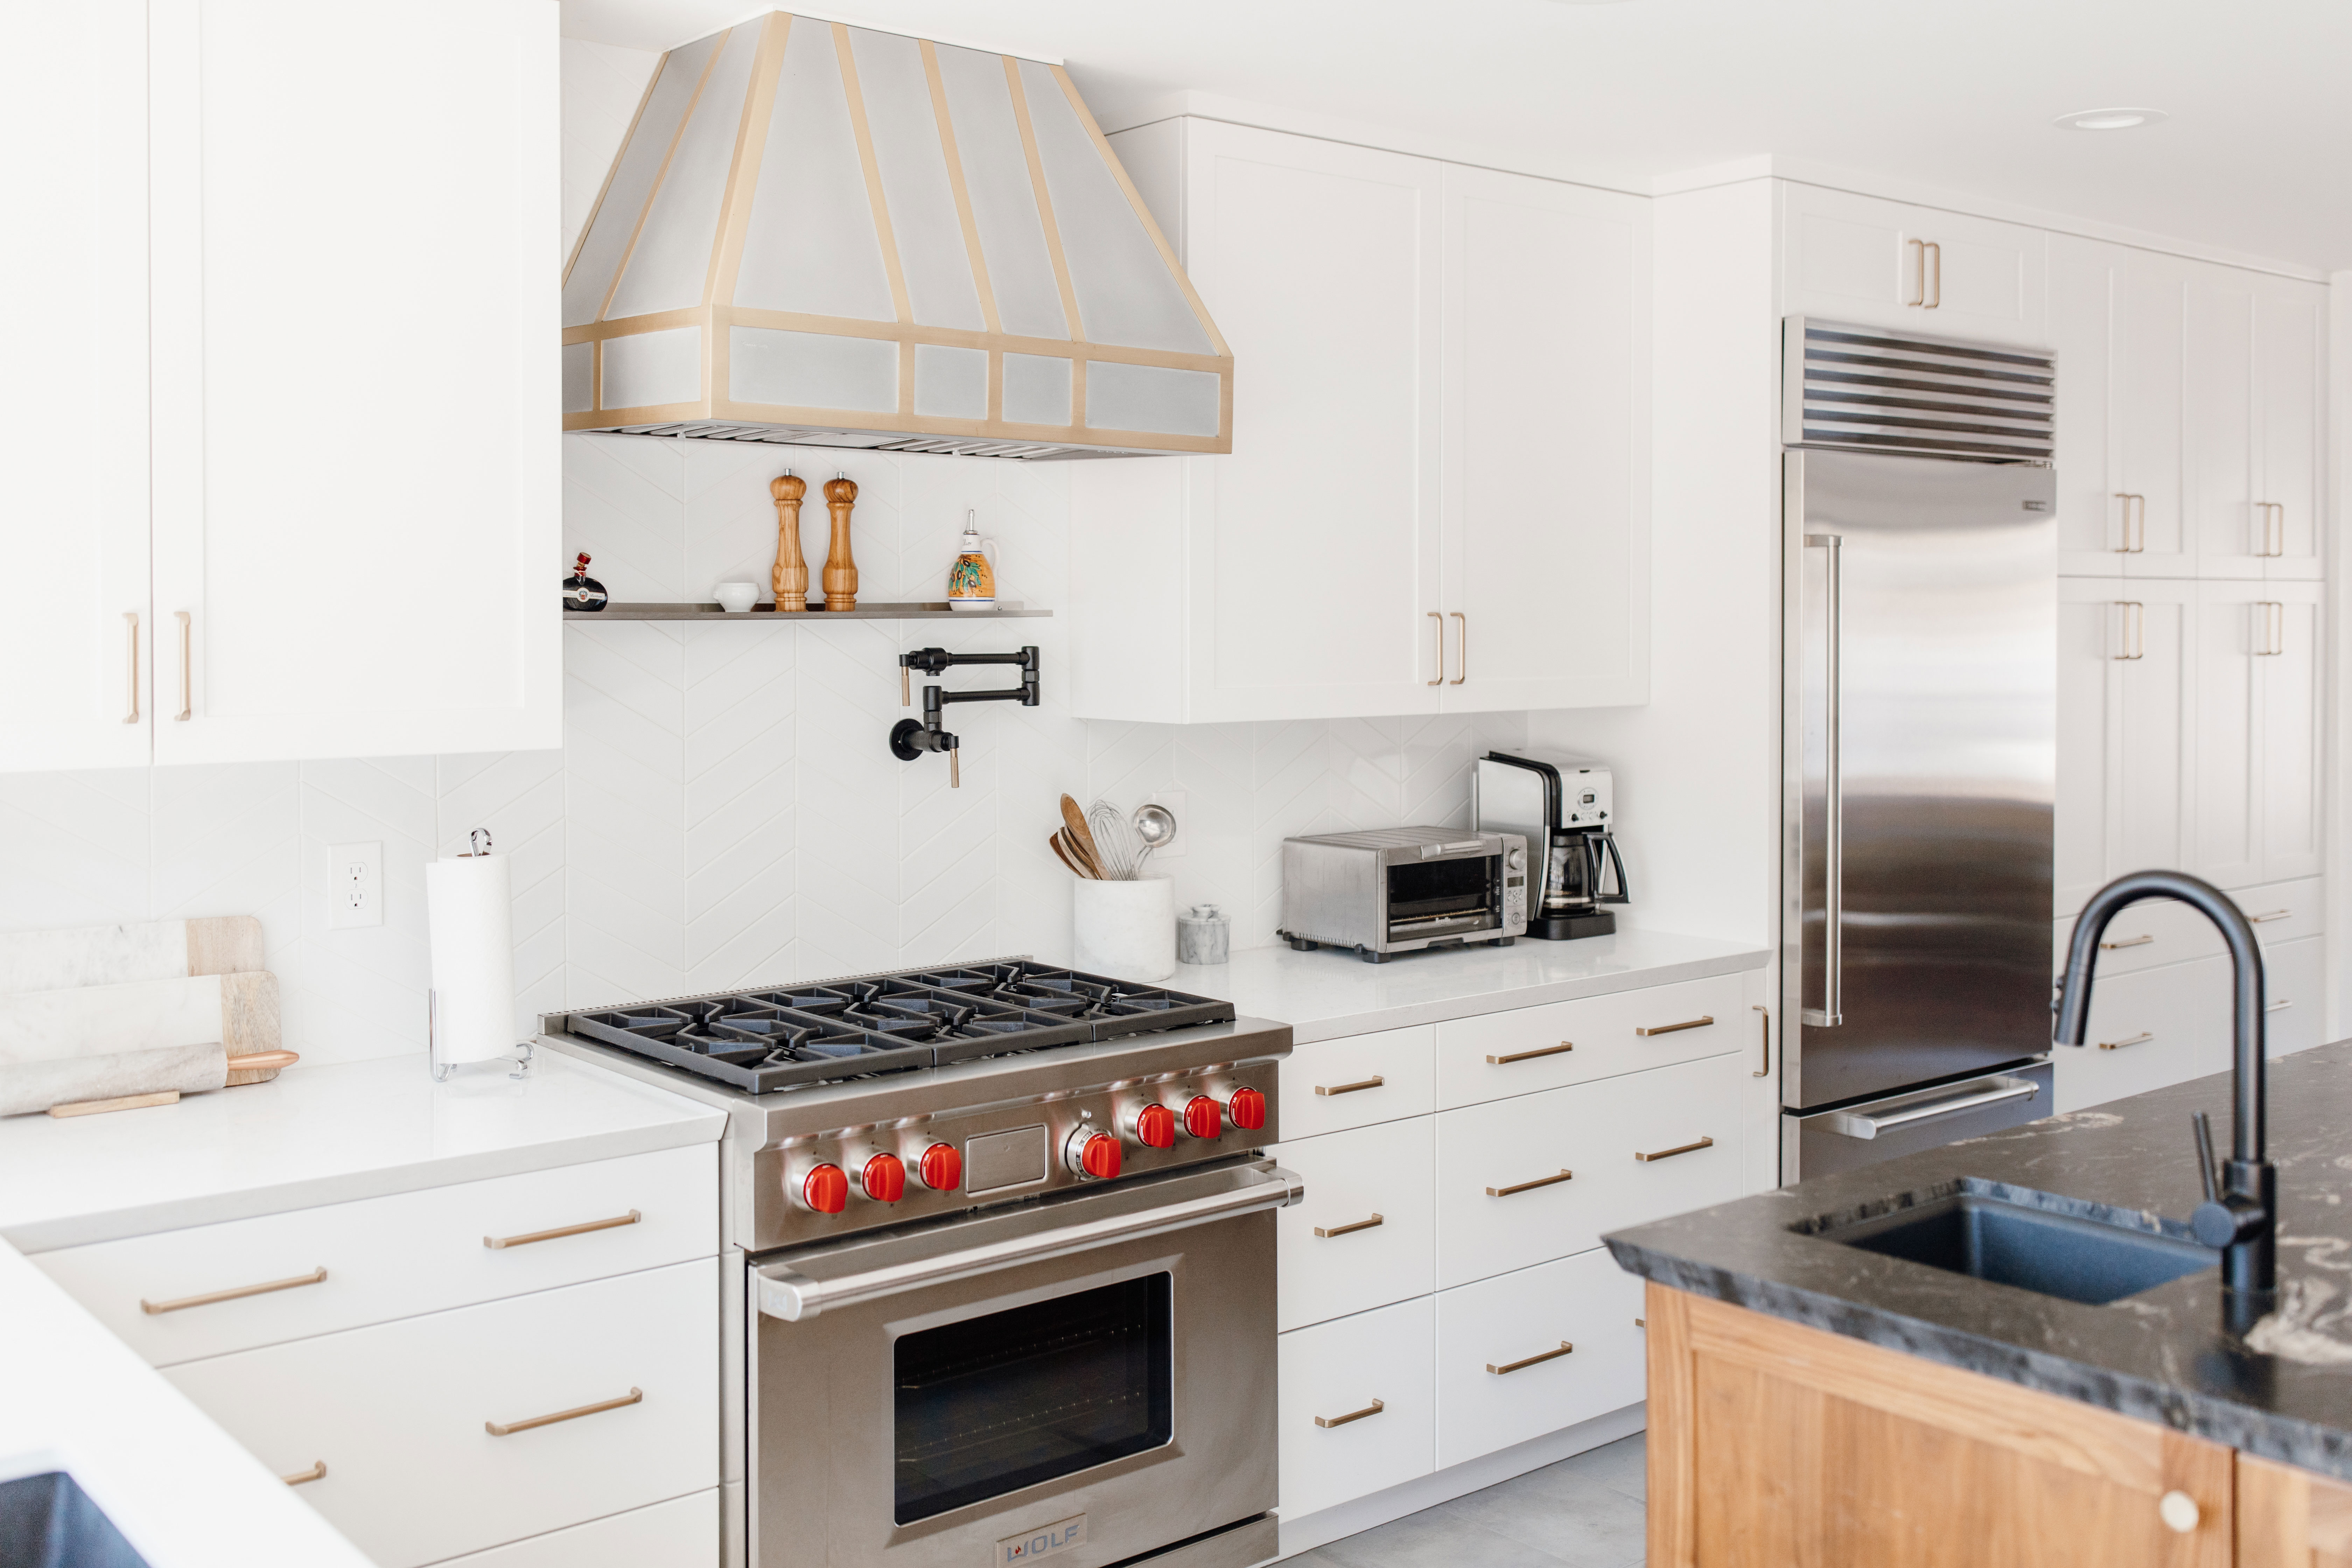 Beautiful kitchen design idea with stylish range hood, white kitchen cabinets, white kitchen countertops and marble backsplash